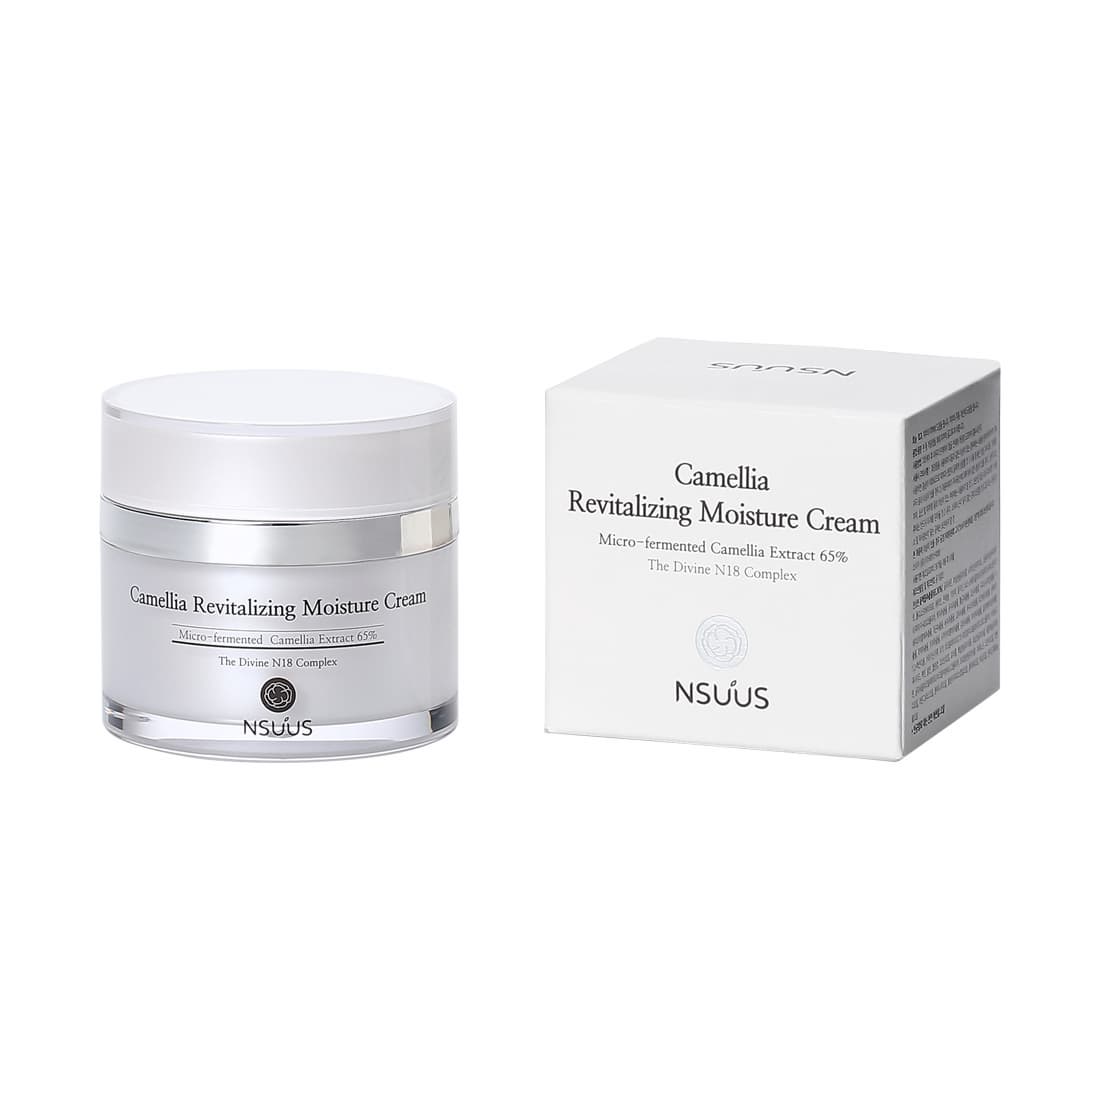 Nsuus Camellia Revitalizing Moisture Cream 50ml